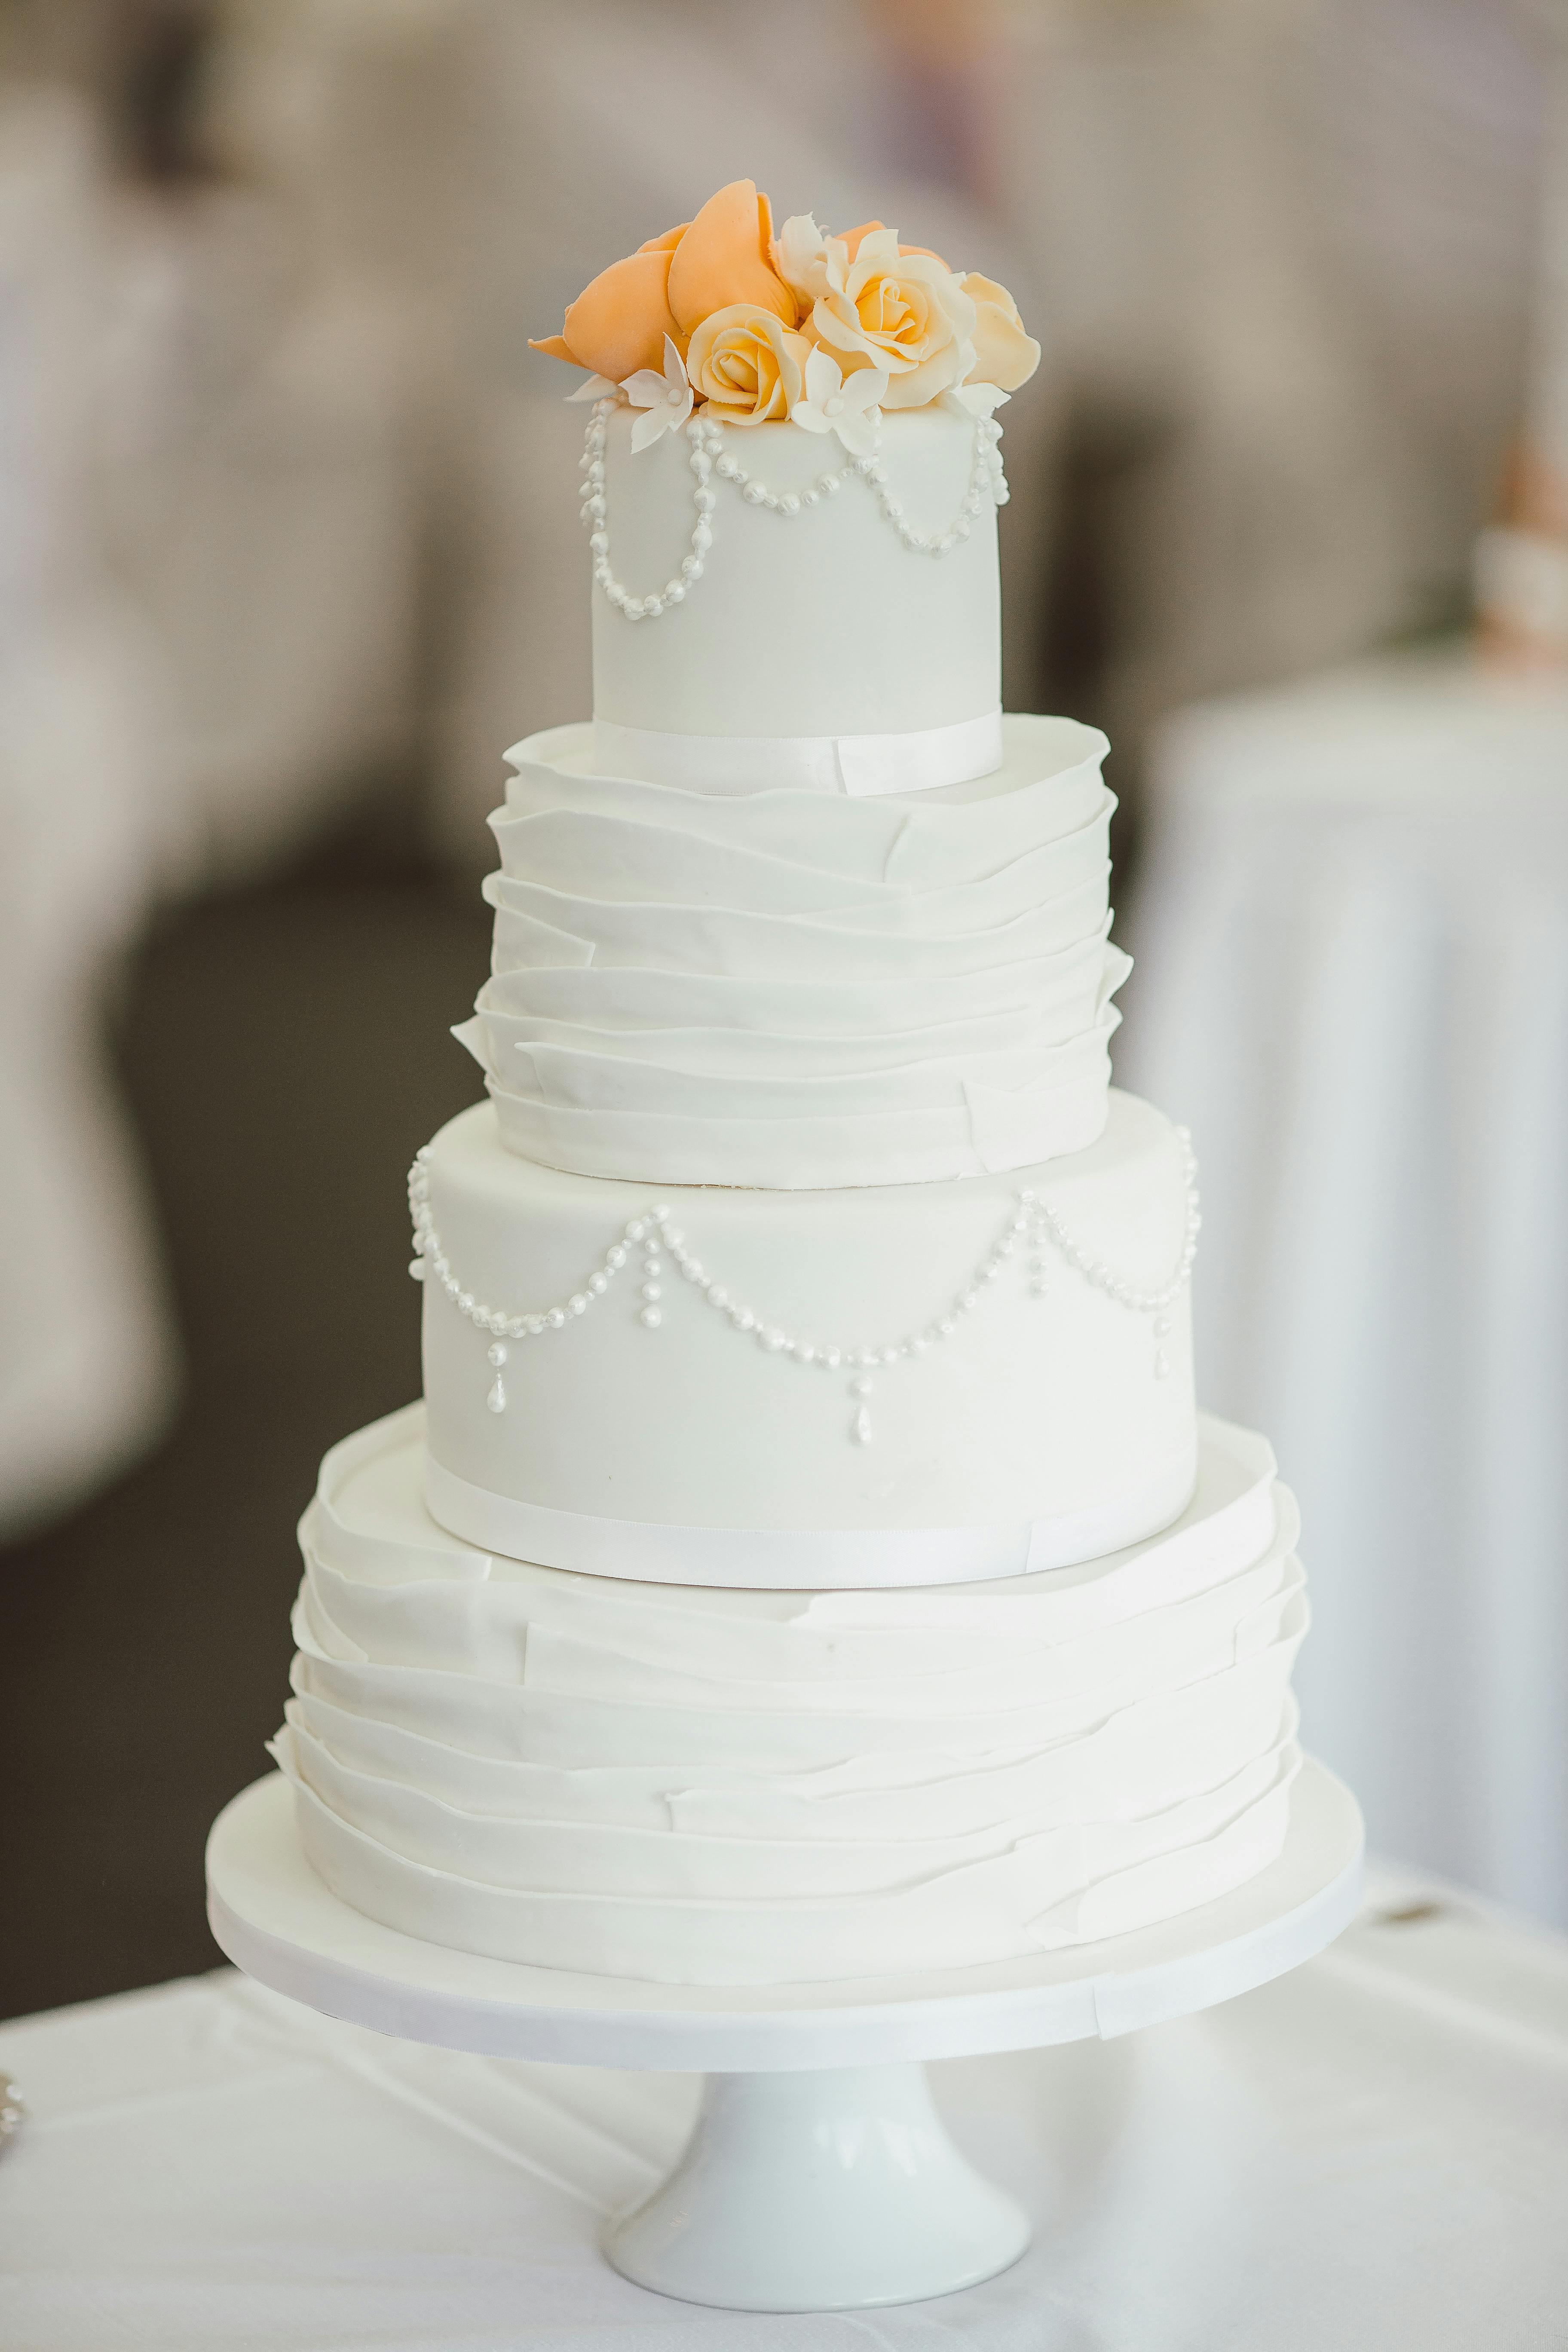 Gâteau de mariage | Source : Pexels